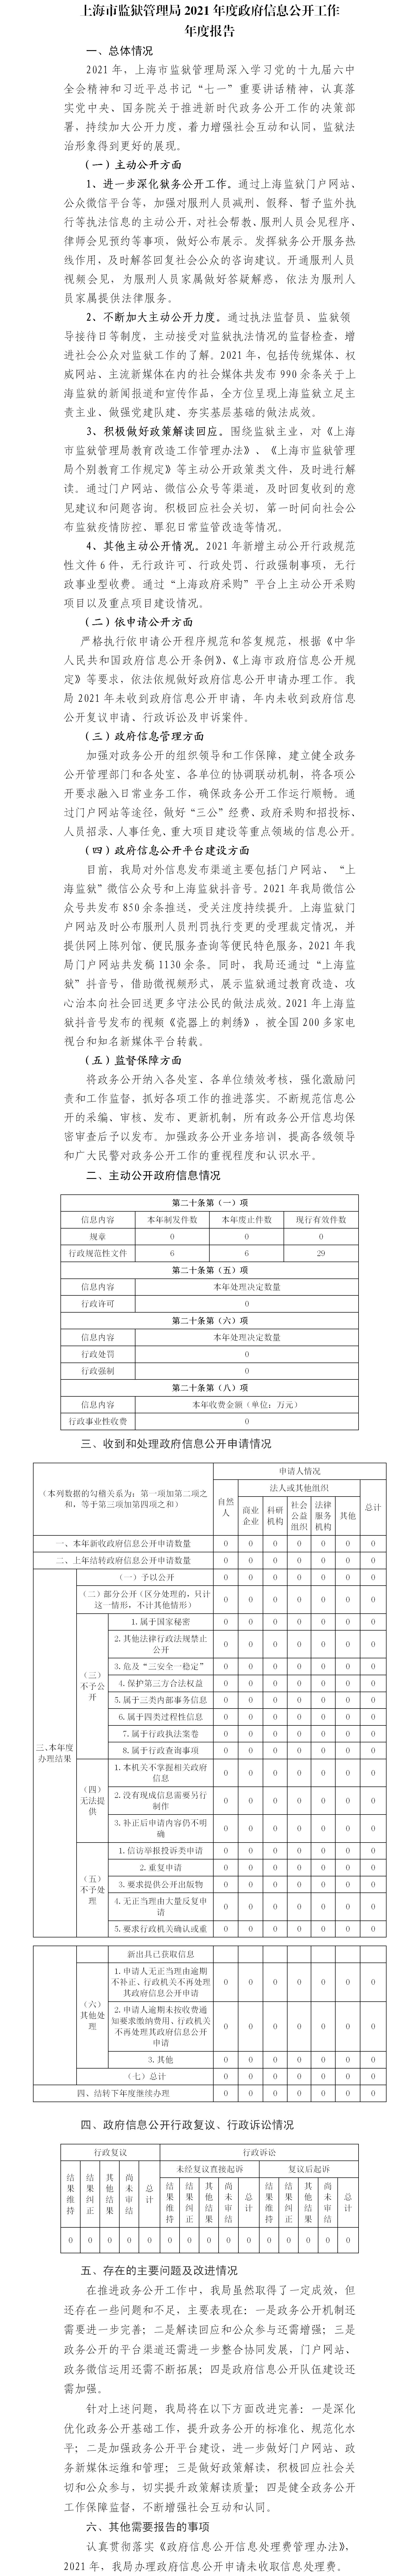 上海市监狱管理局2021年度政府信息公开工作年度报告.jpg